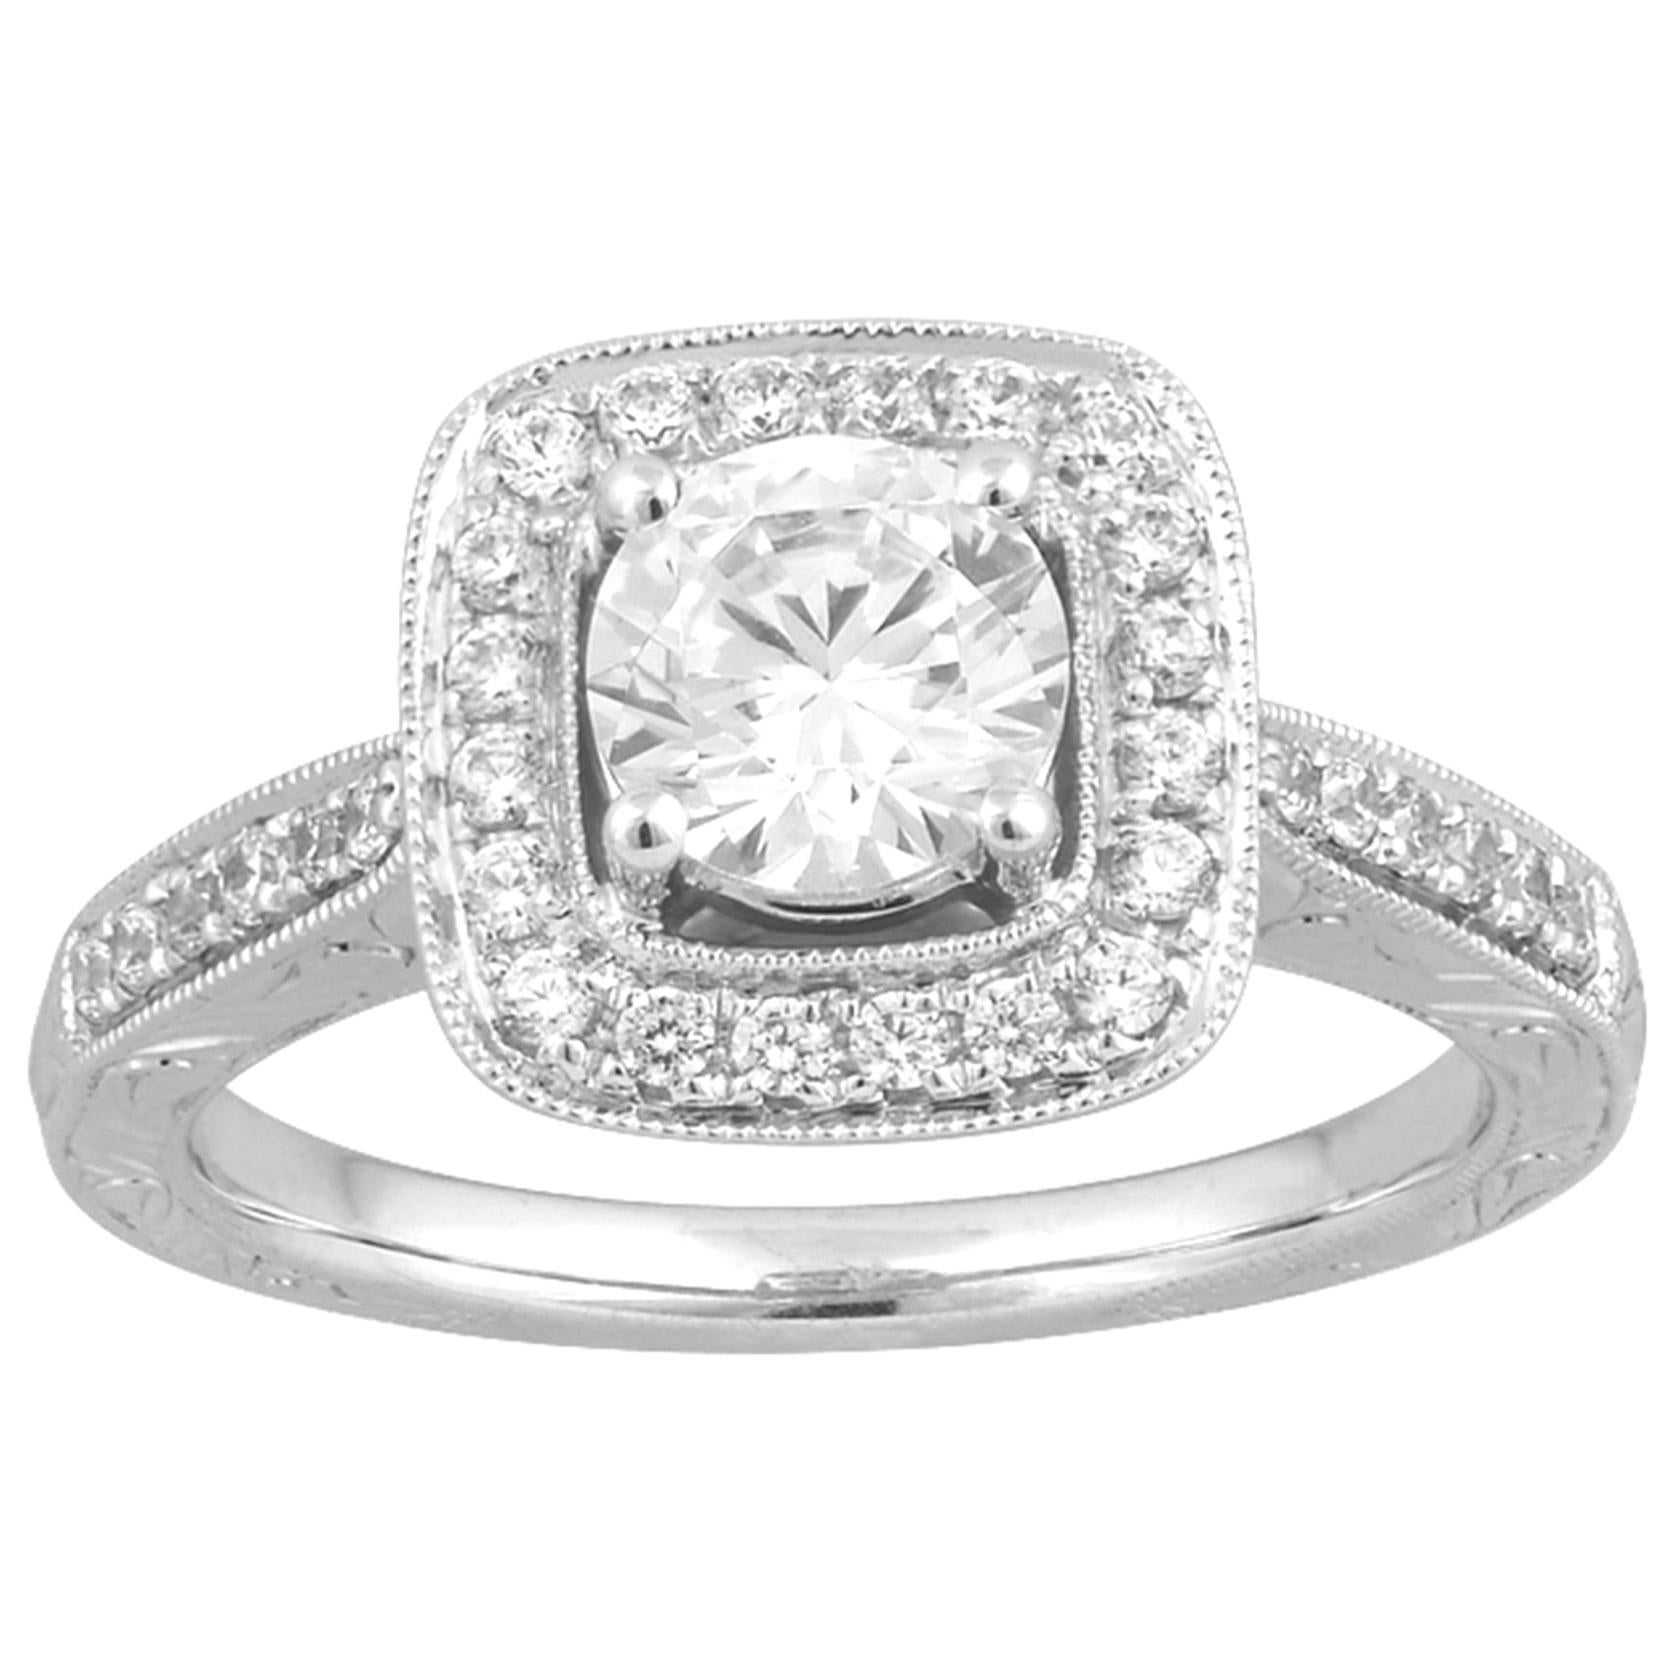 TJD 1.10 Carat Round Diamond 18 Karat White Gold Square Halo Engagement Ring